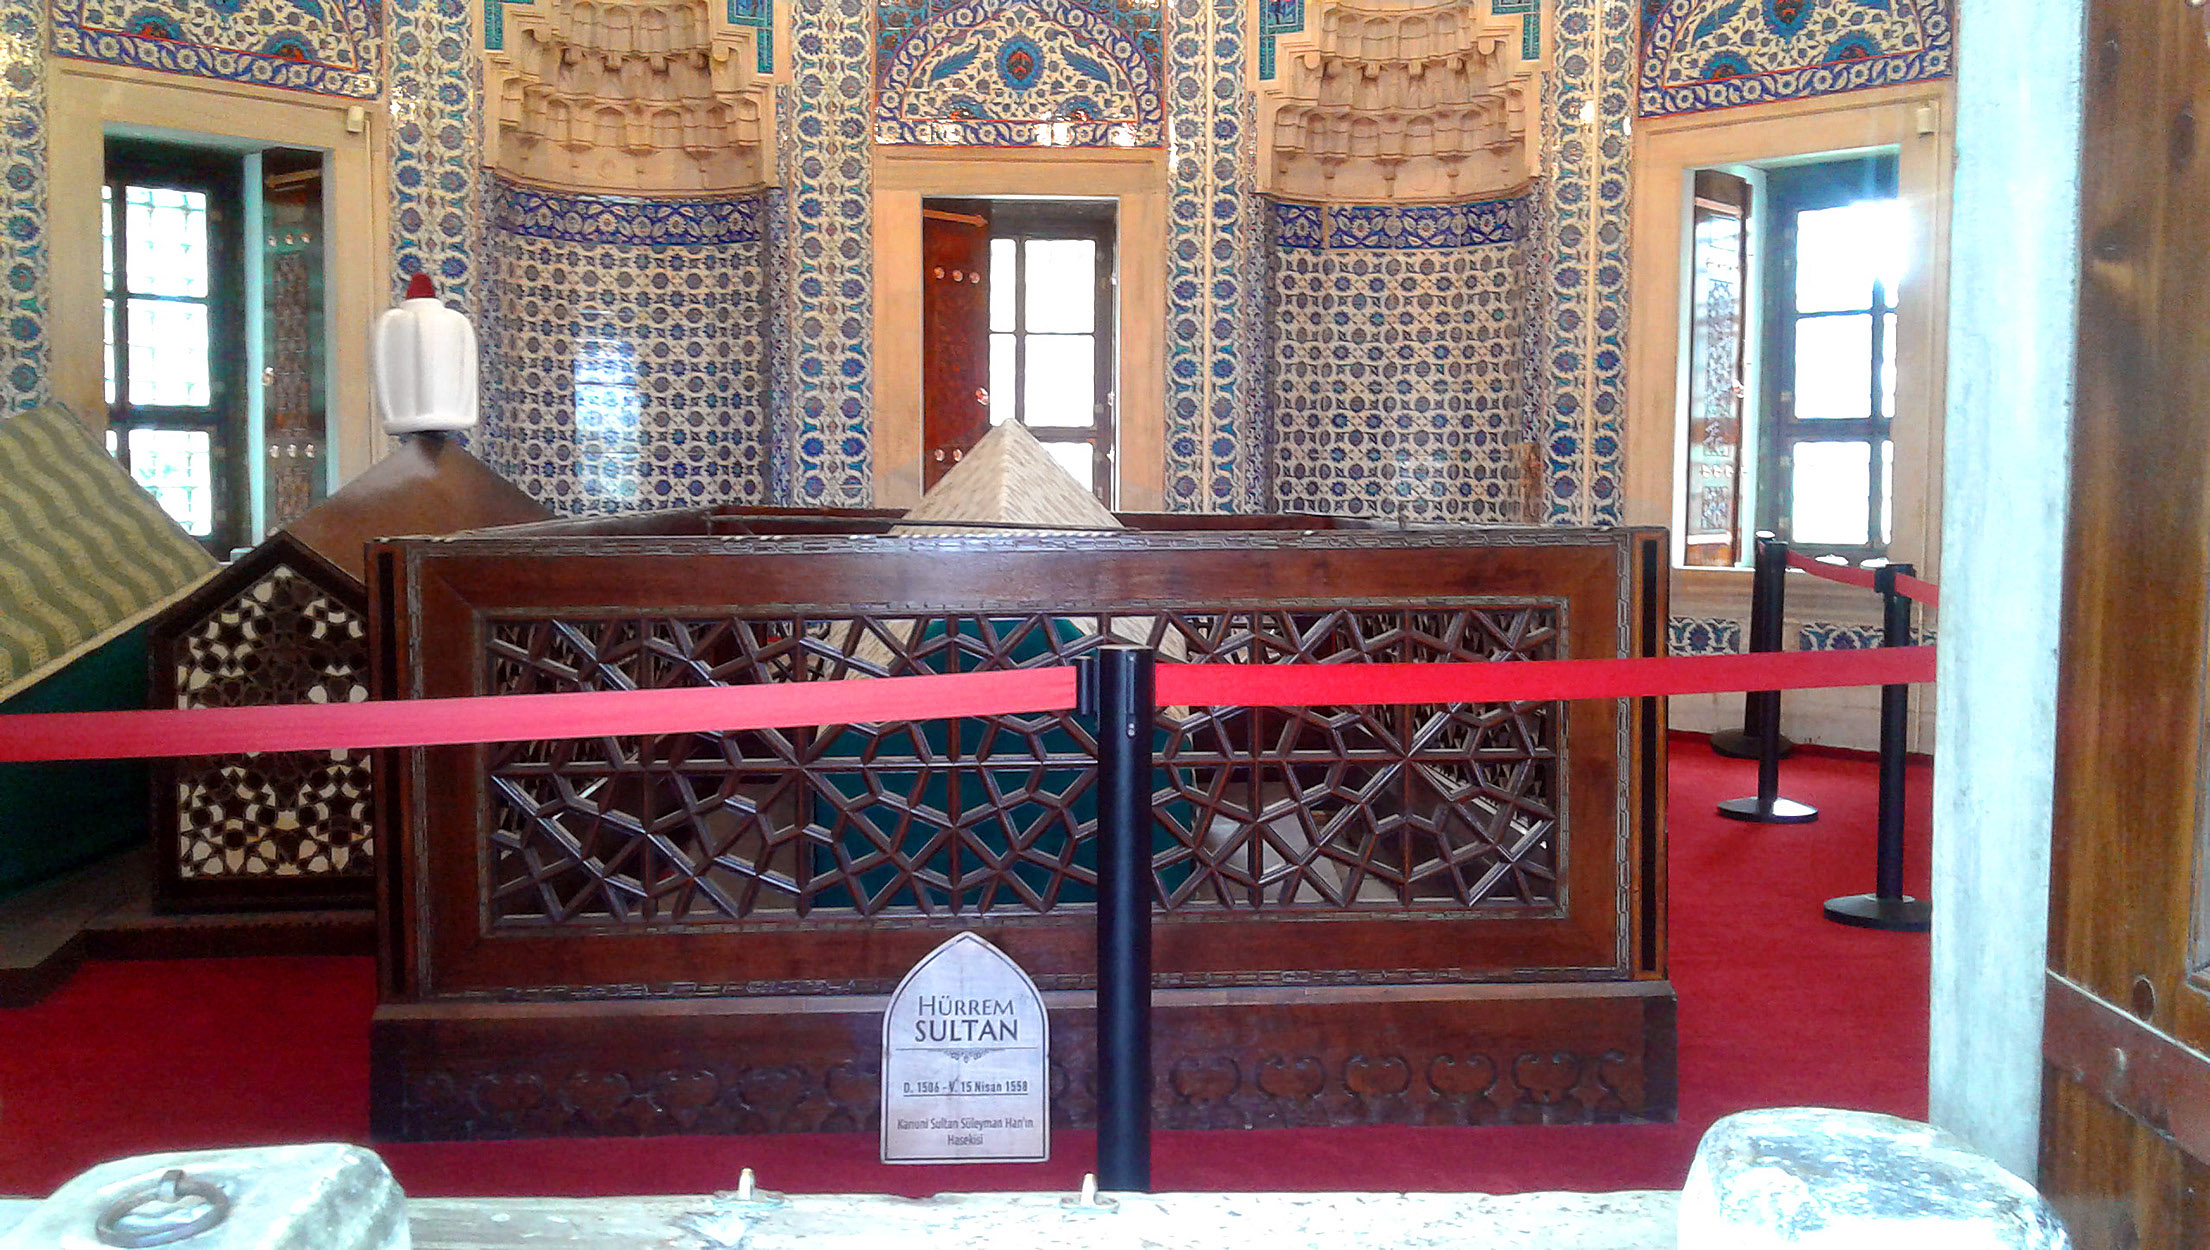 гробница роксоланы в мечети сулеймание в стамбуле